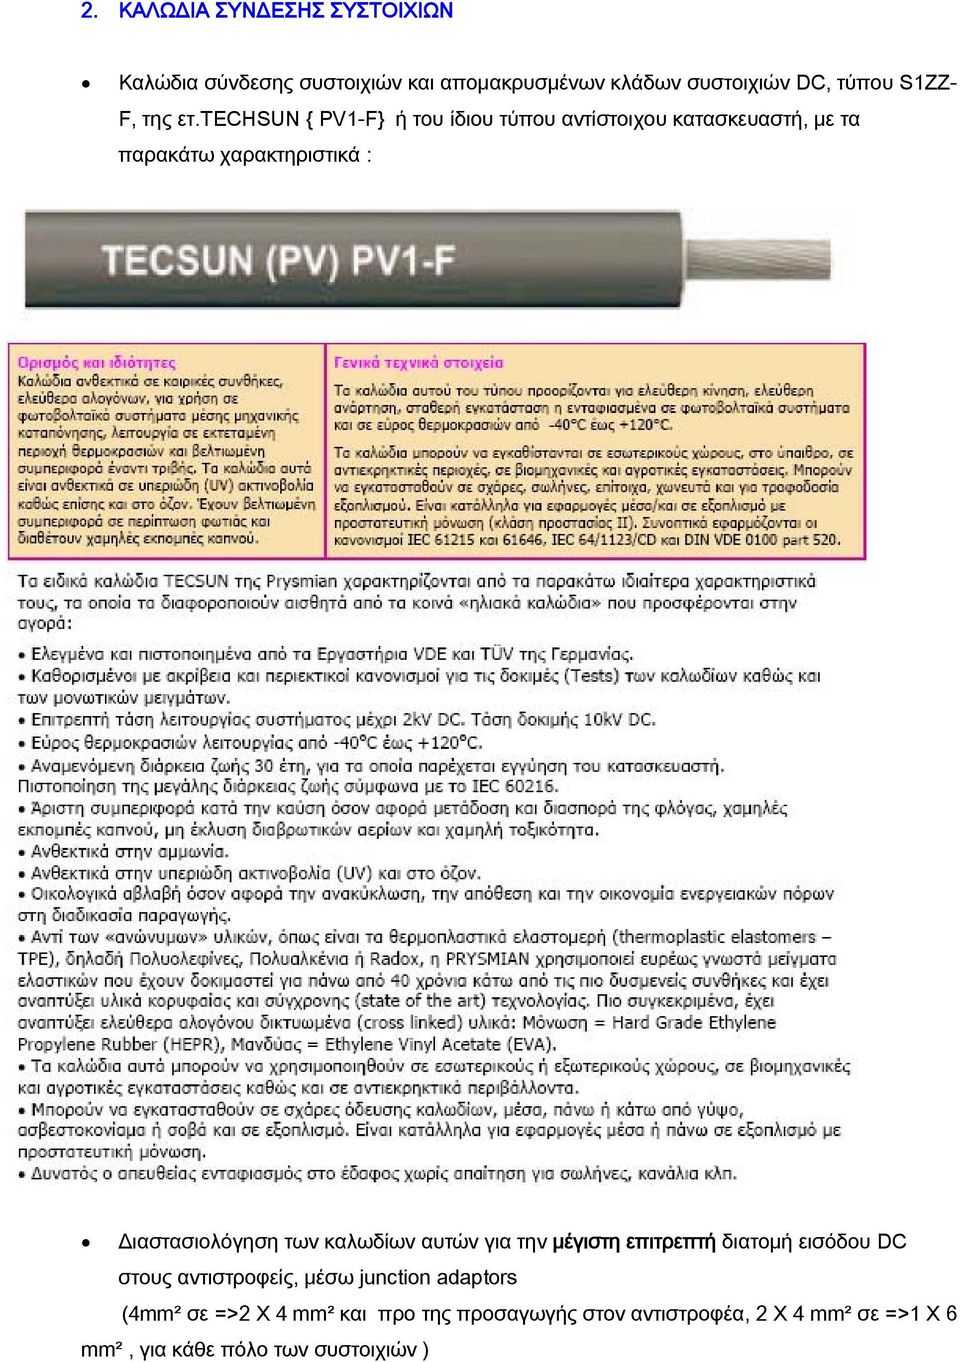 τechsun { PV1-F} ή του ίδιου τύπου αντίστοιχου κατασκευαστή, με τα παρακάτω χαρακτηριστικά : Διαστασιολόγηση των